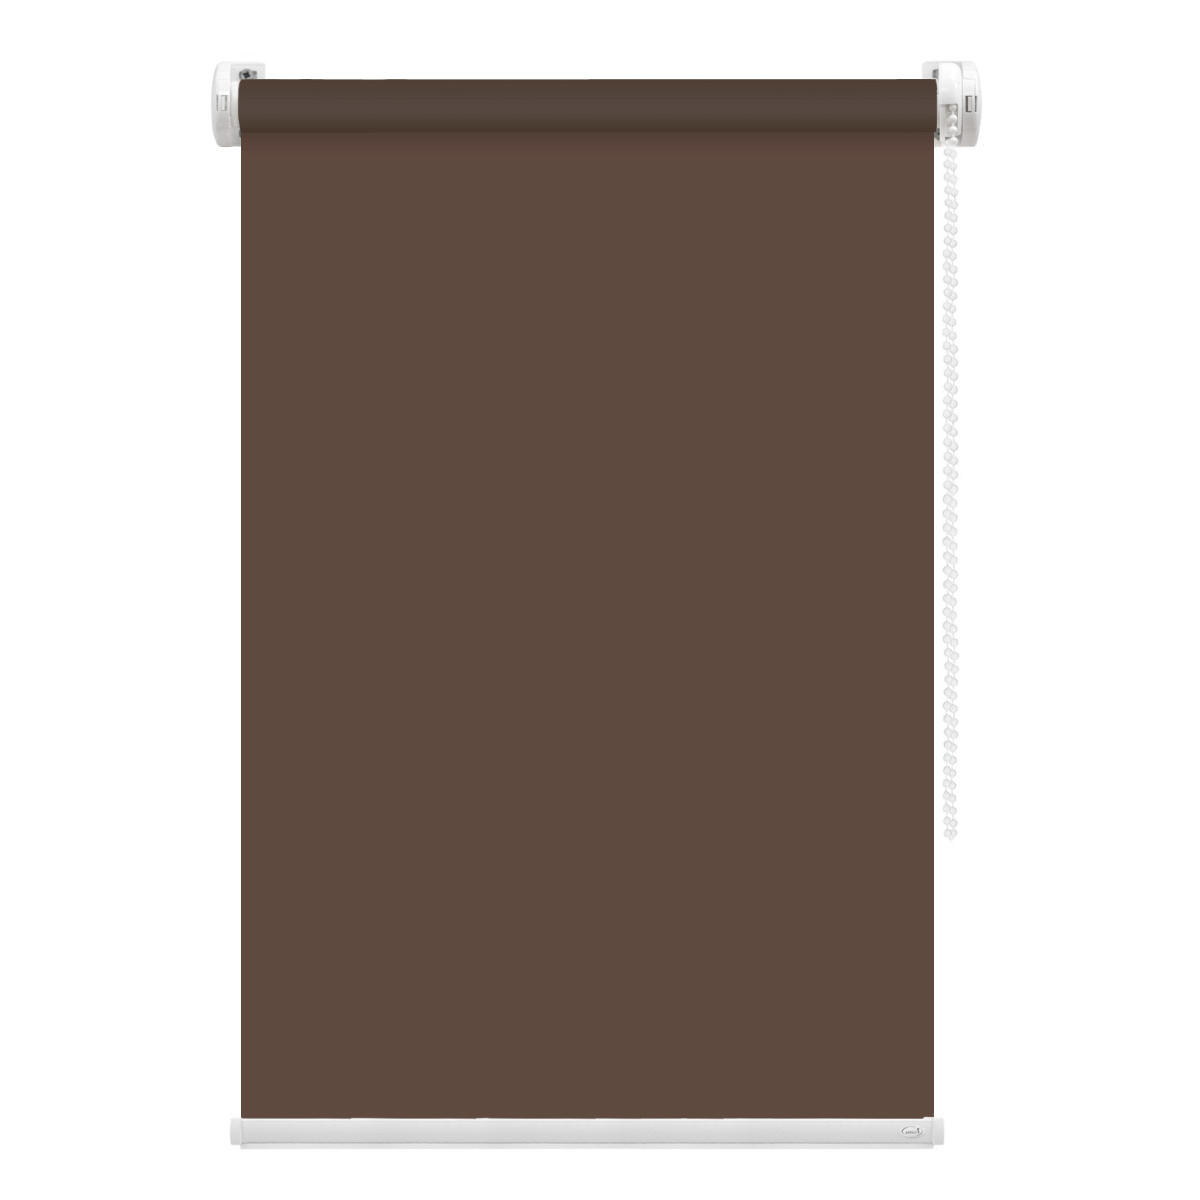 Рулонная штора FixLine Amigo Basic коричневая 75х160 см рулонная штора fixline amigo basic коричневая 65х160 см